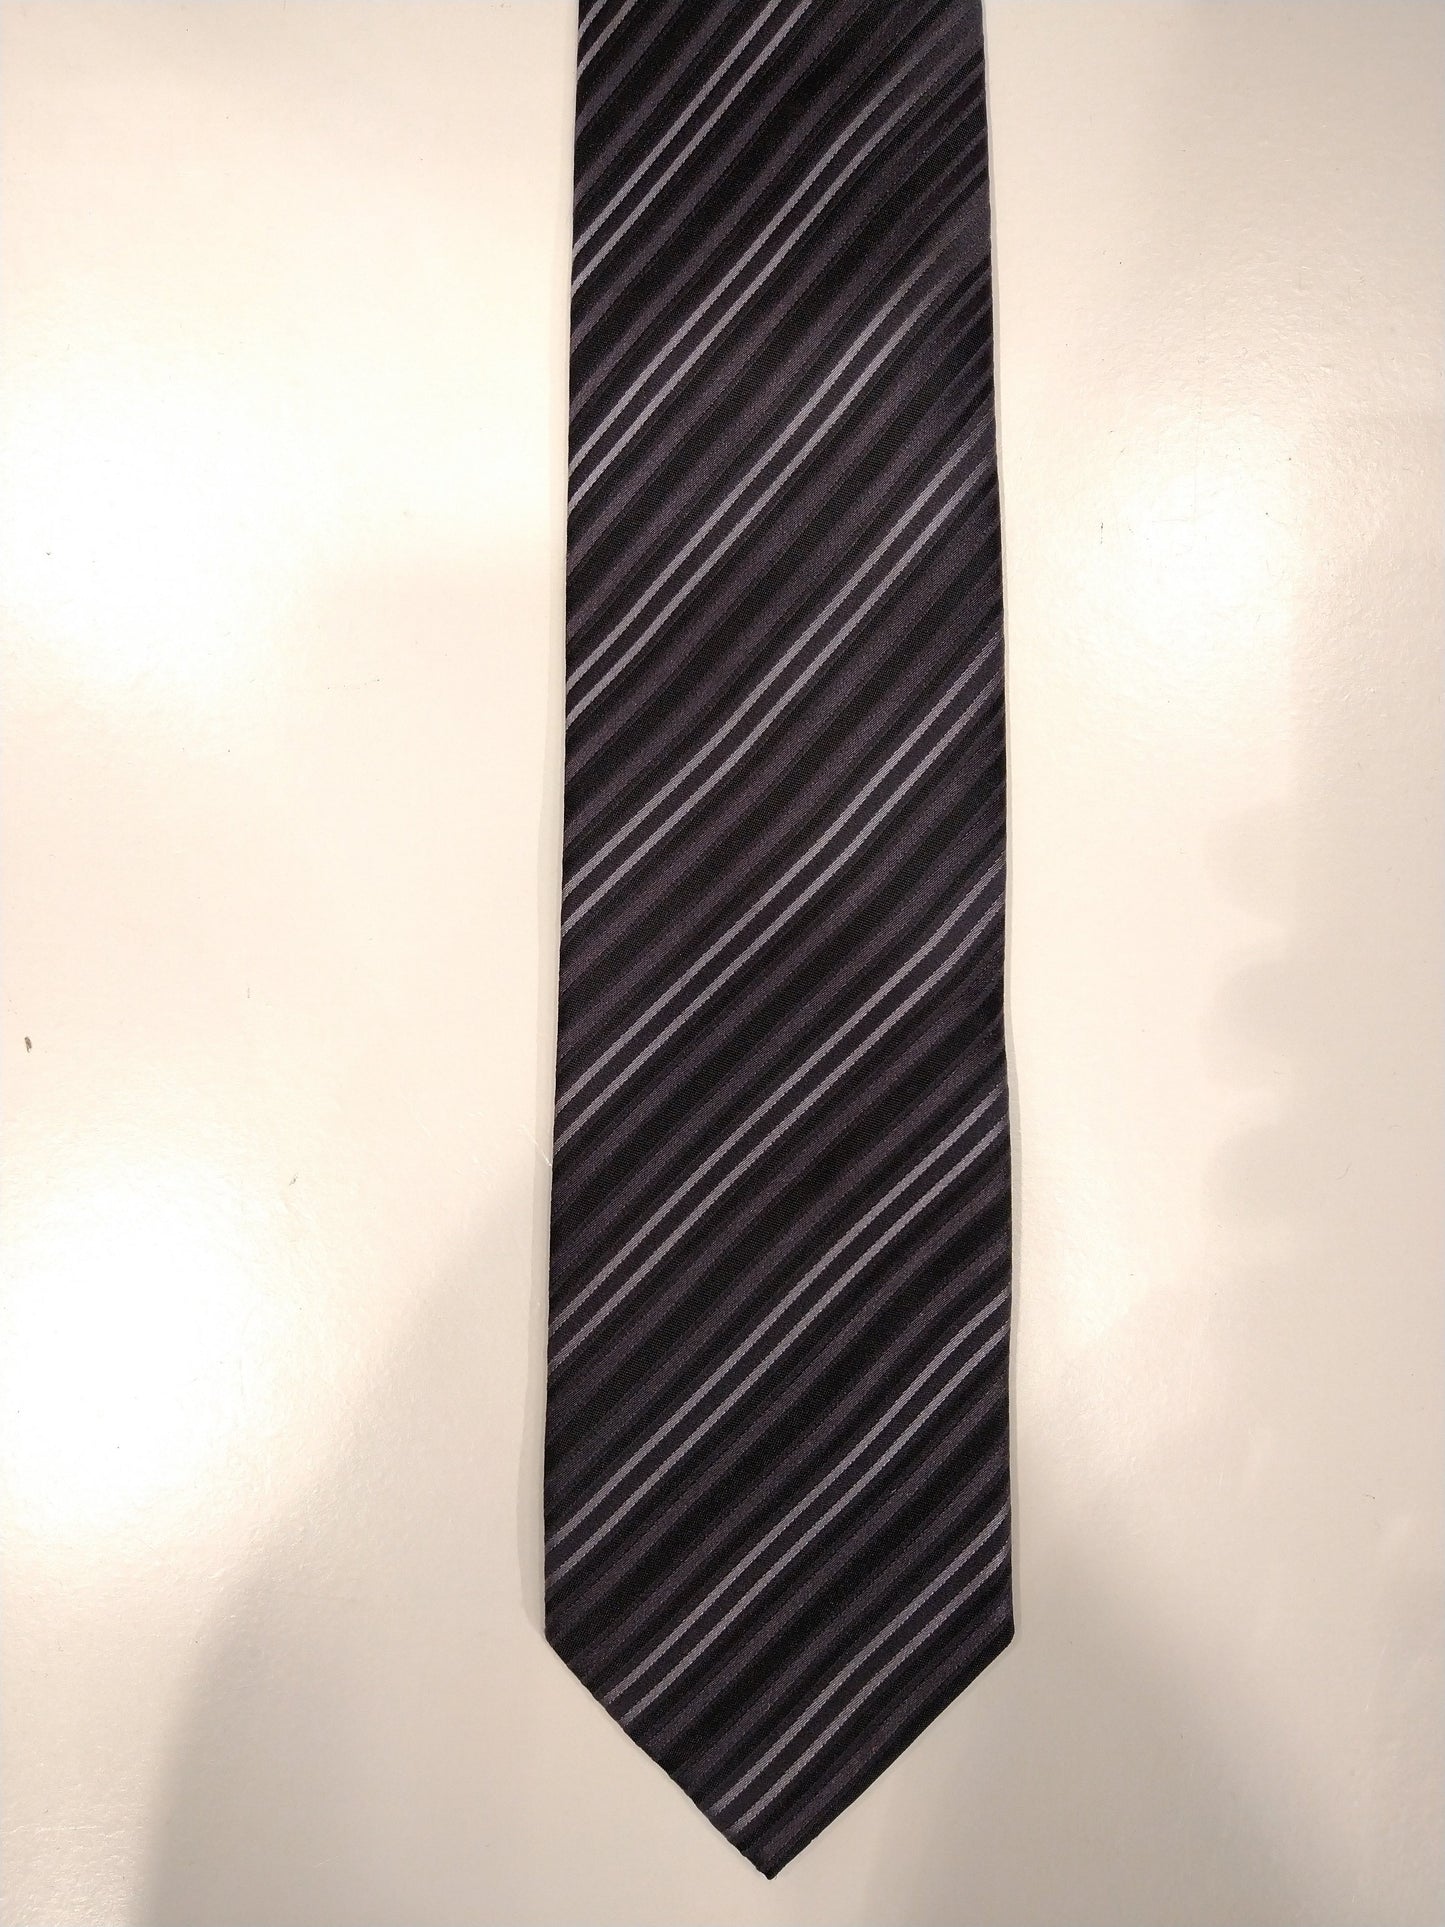 Cravatta di seta. Motivo a strisce in bianco e nero